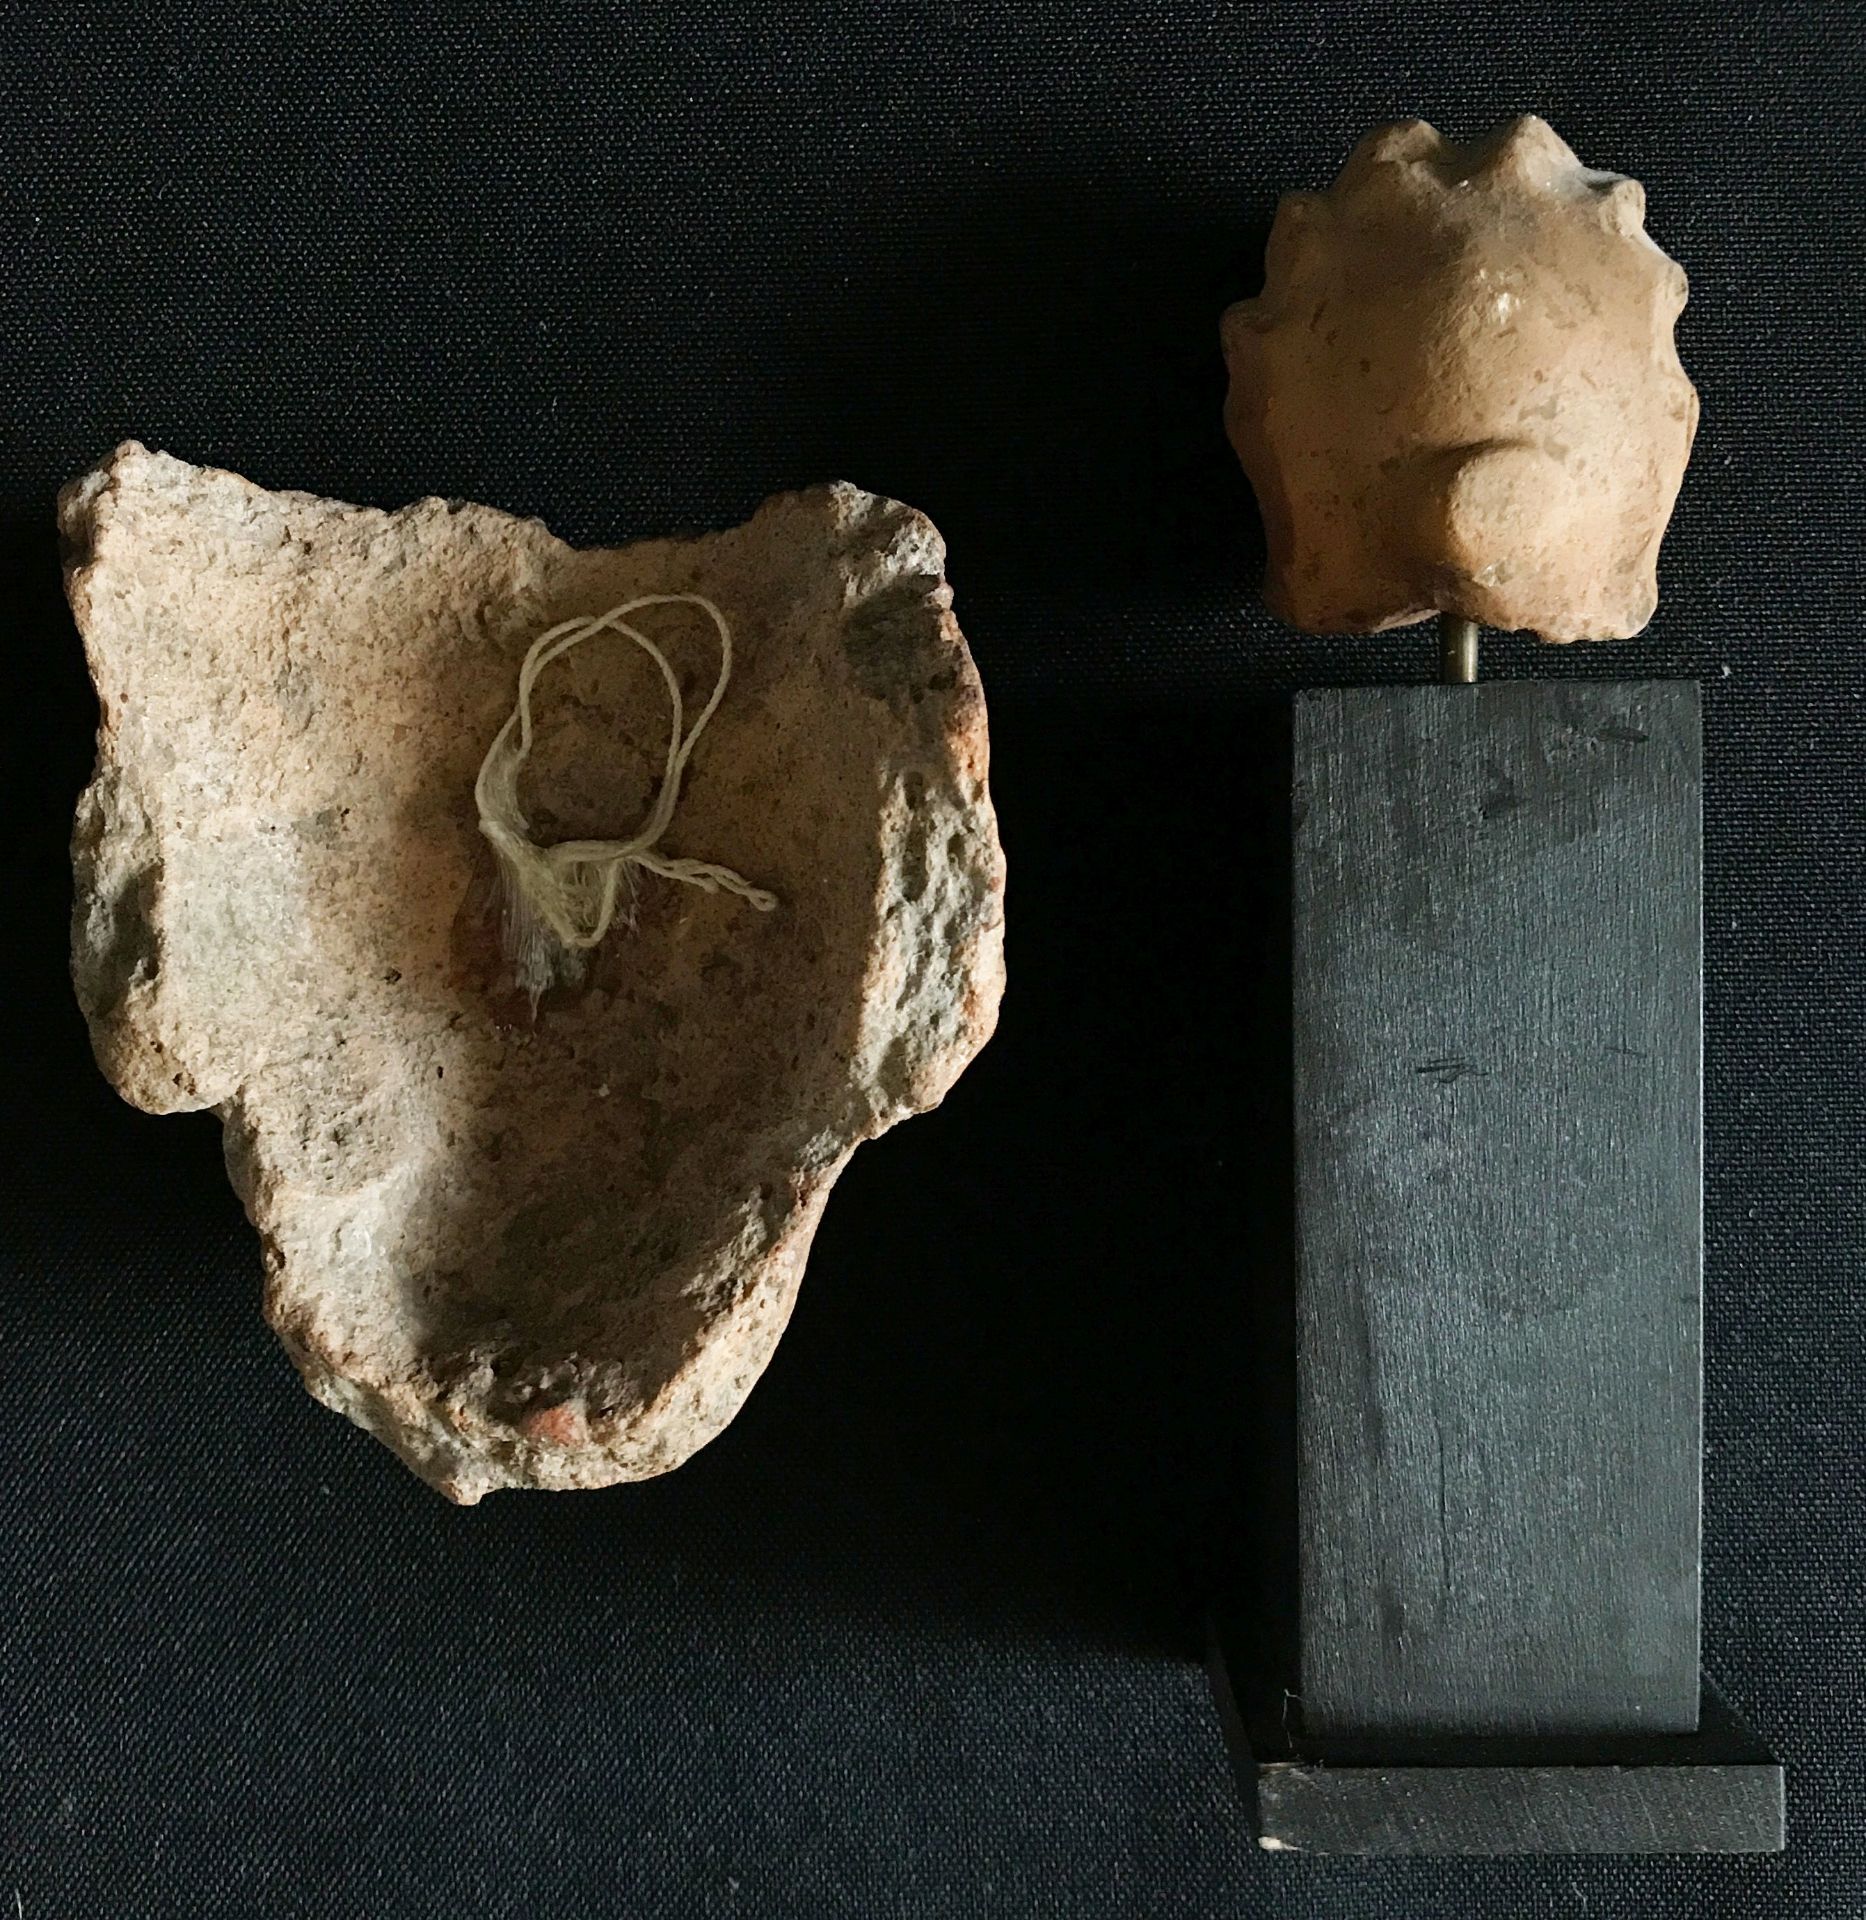 Zwei kleine Tonköpfchen, Alter unbekannt, antike Herkunft möglich, Fragmente, Altersspuren, 9x8 cm - Image 3 of 3